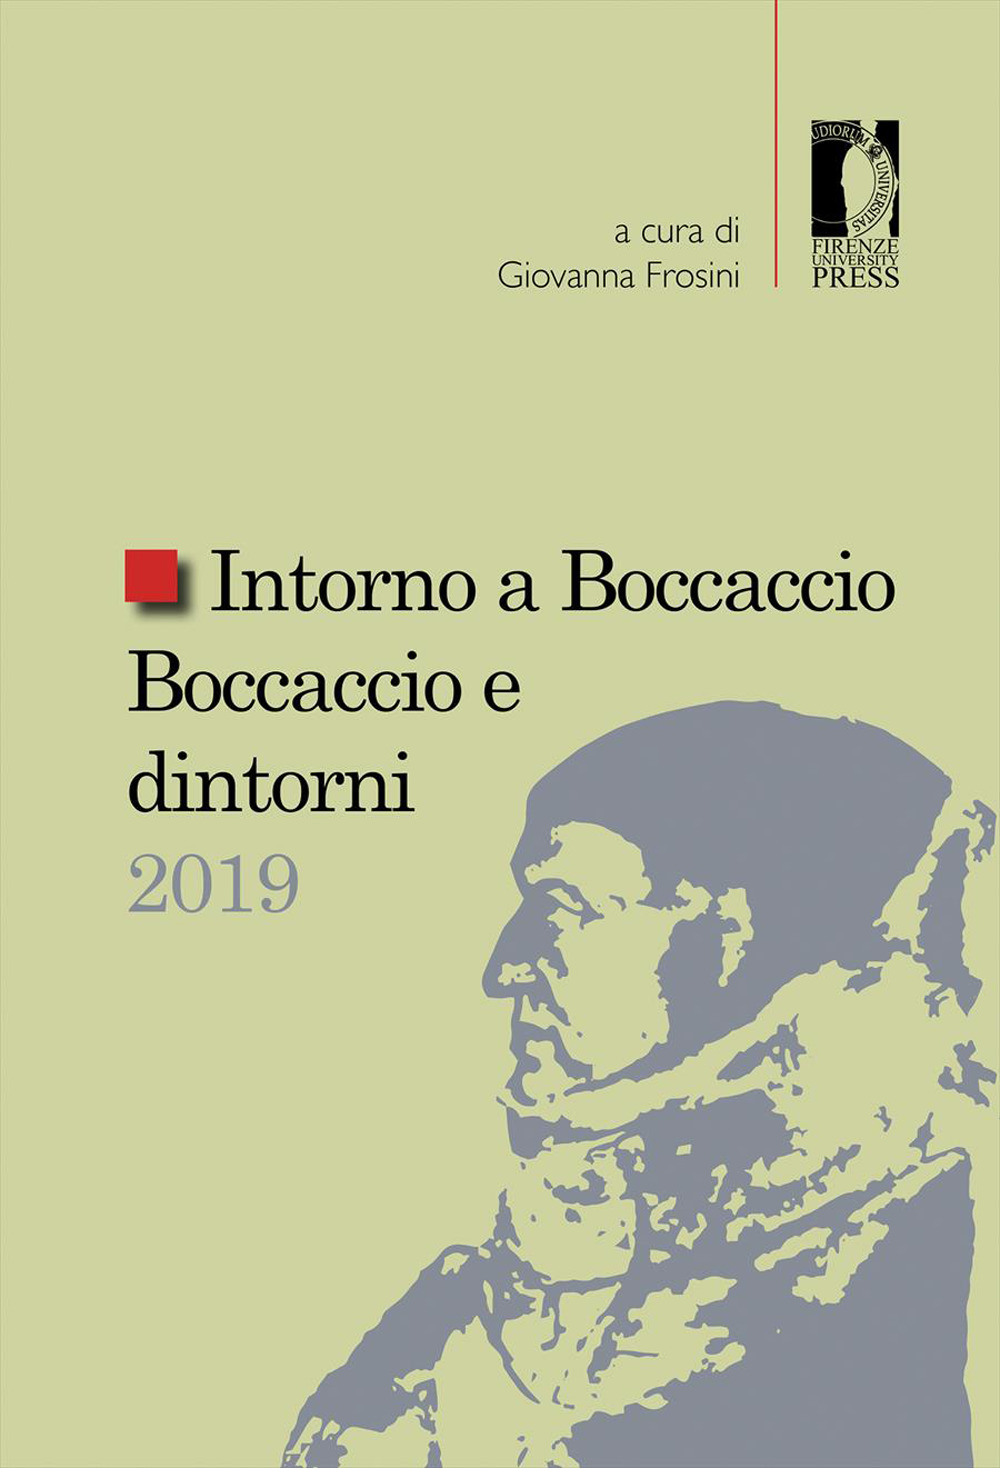 Intorno a Boccaccio/Boccaccio e dintorni 2019